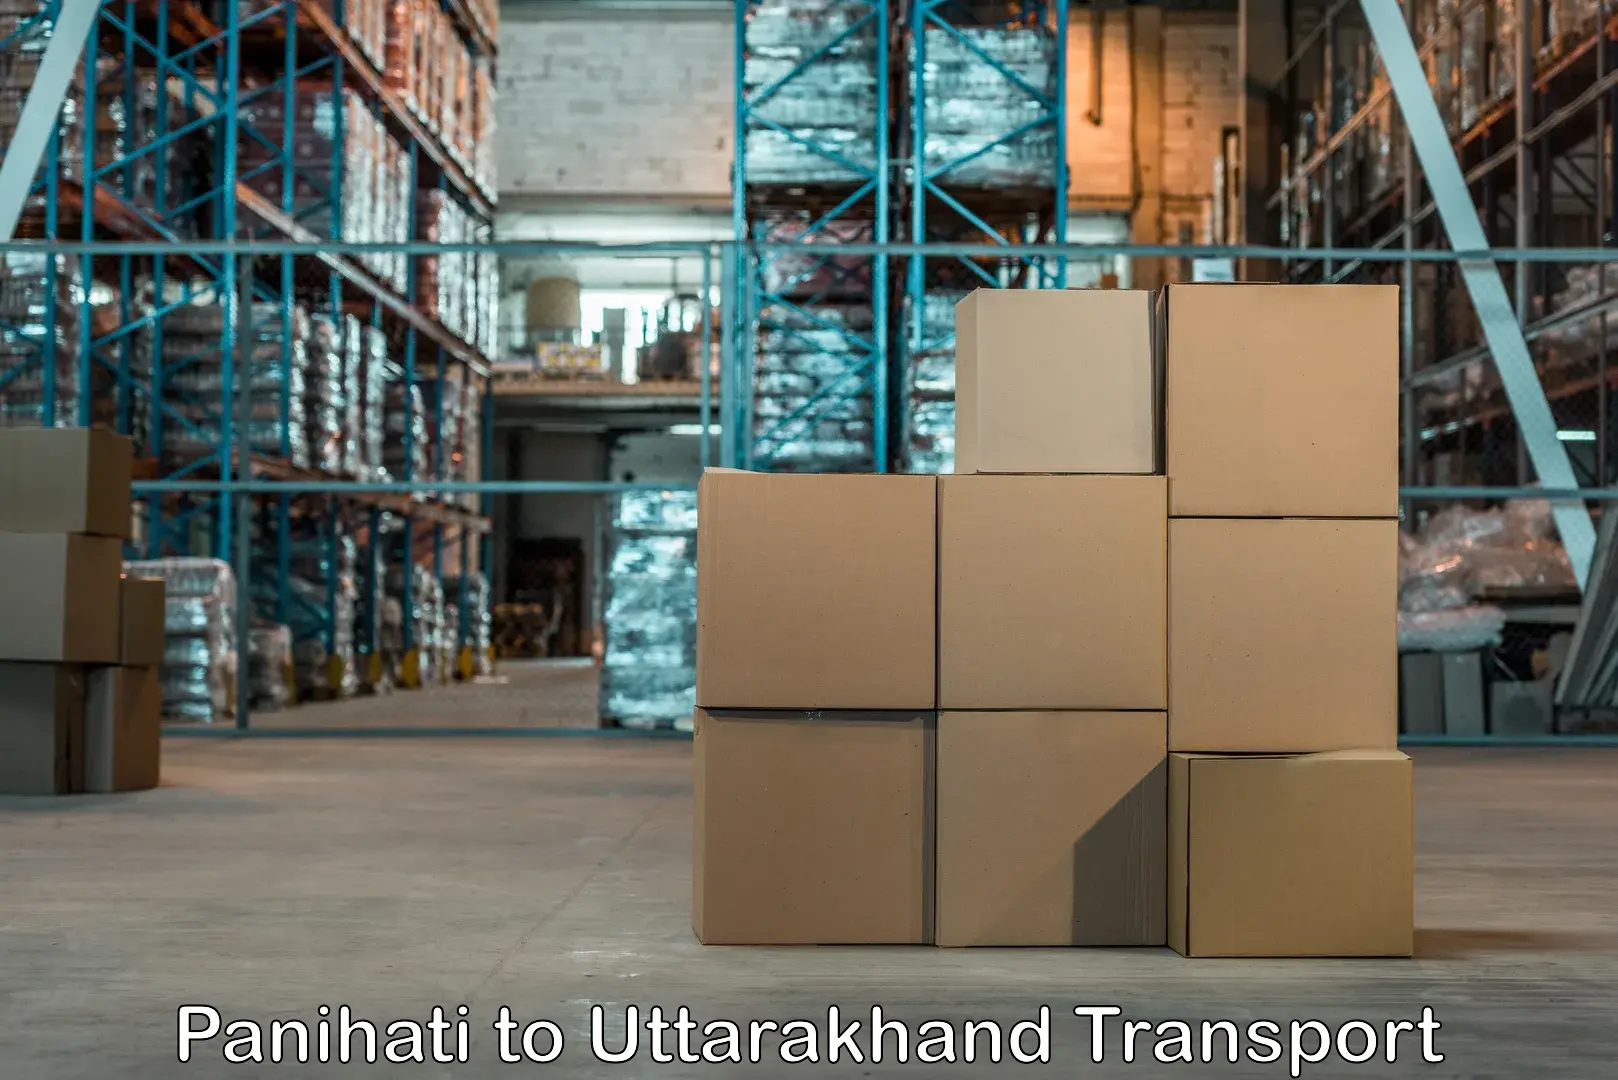 Truck transport companies in India in Panihati to Uttarakhand